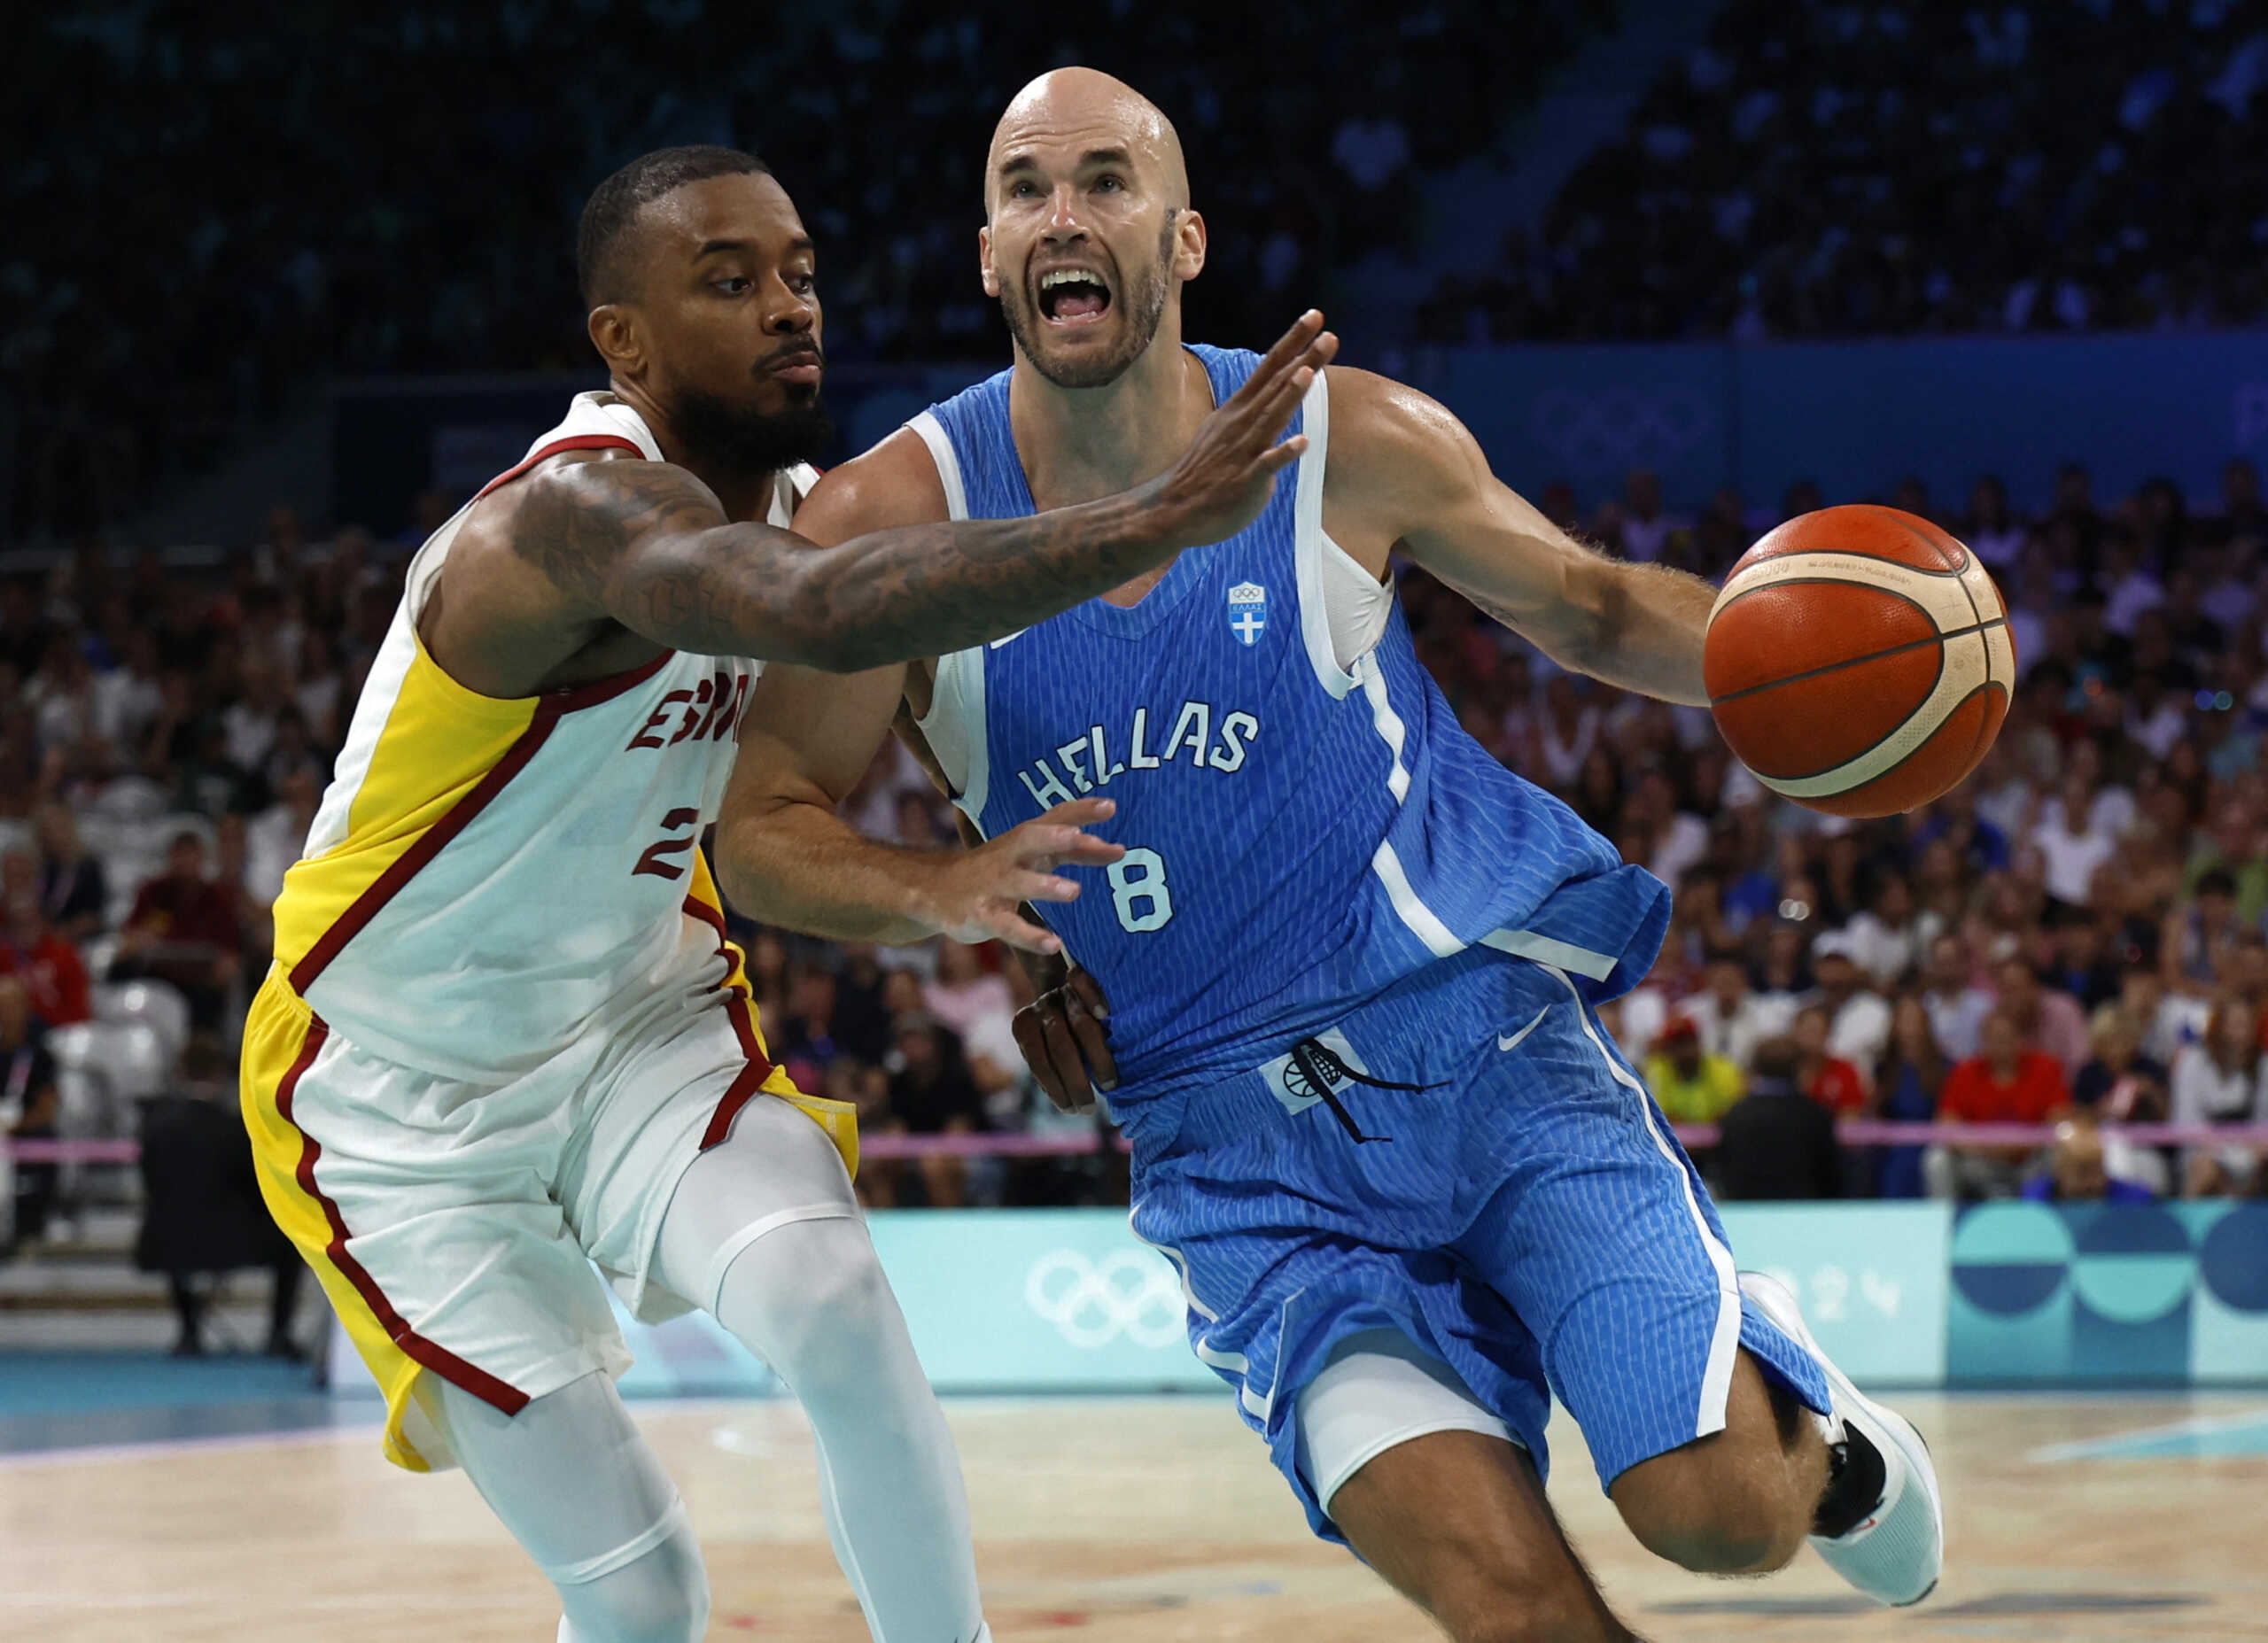 Ισπανία – Ελλάδα 84-77: Δεύτερη ήττα στις λεπτομέρειες για την Εθνική μπάσκετ στους Ολυμπιακούς Αγώνες